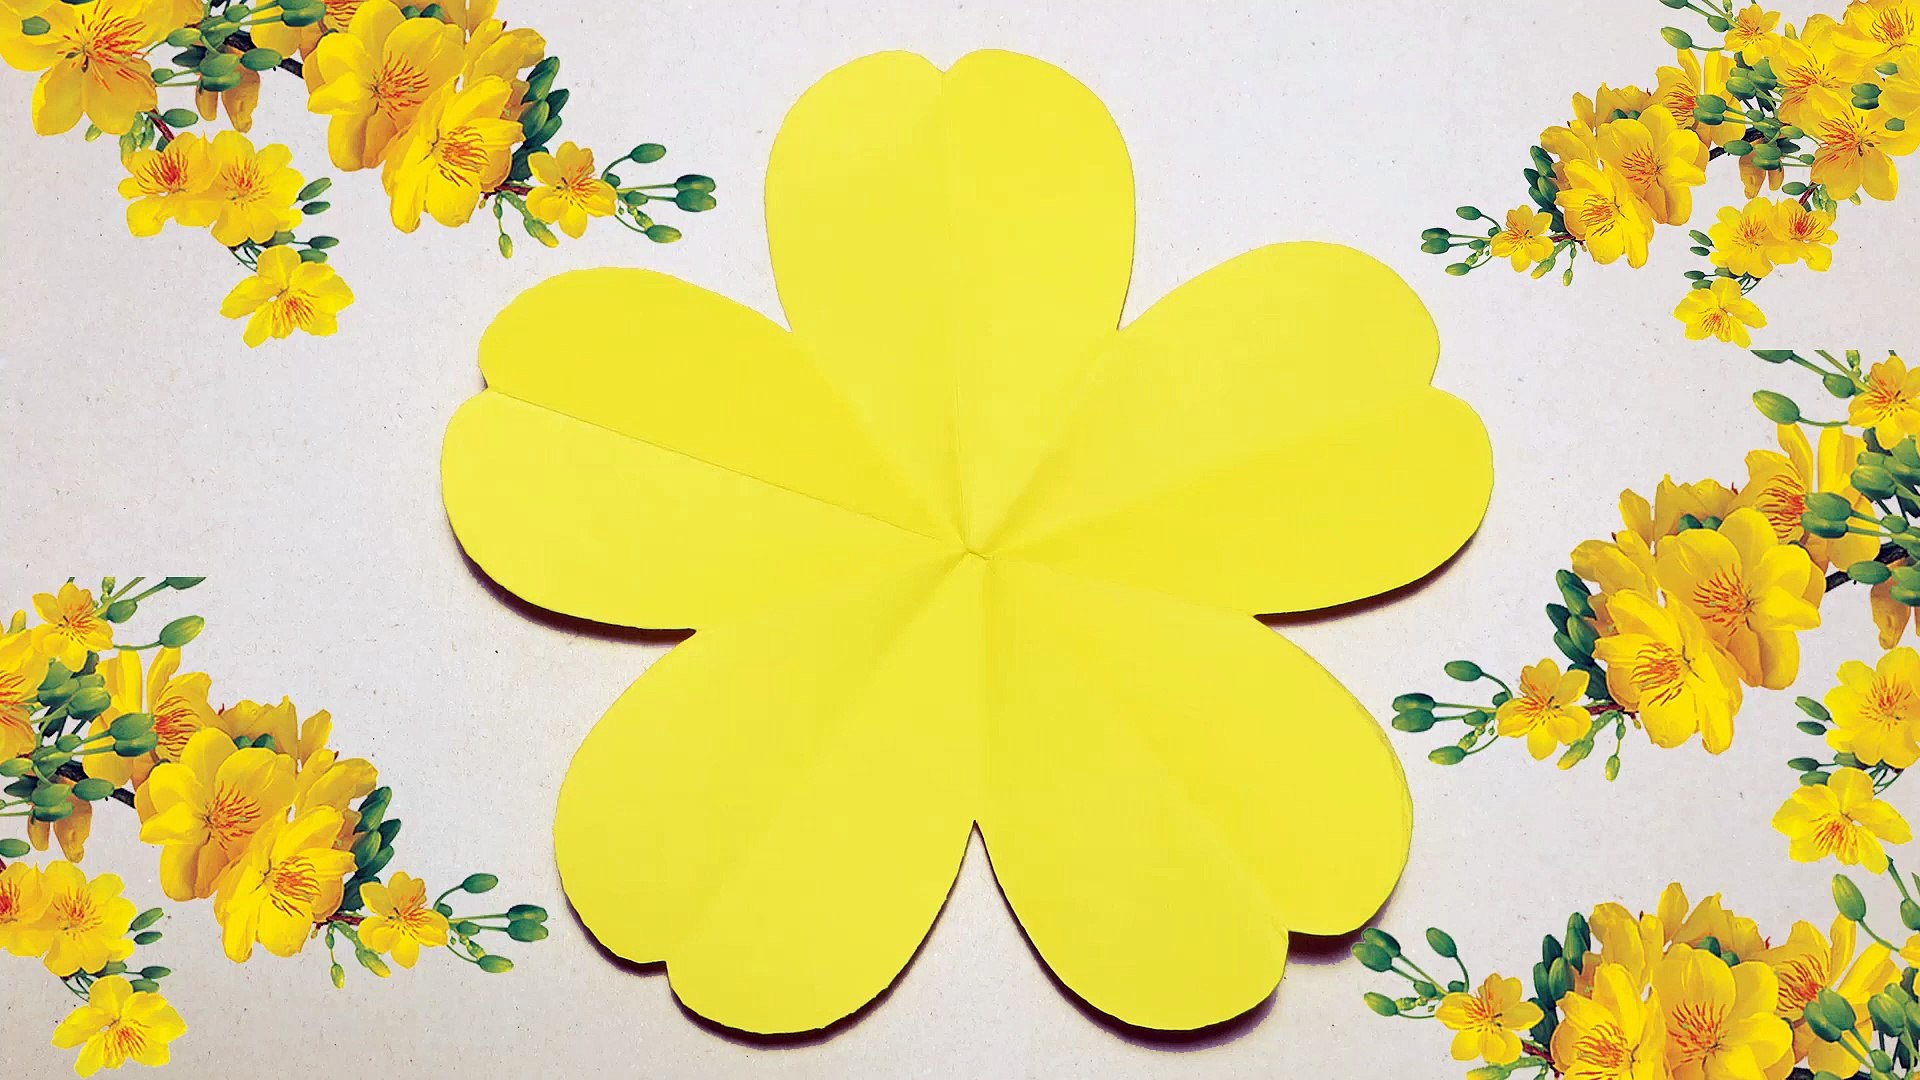 Bạn đã bao giờ tự tay xếp hoa 5 cánh màu vàng chưa? Hãy cùng xem hình ảnh này để biết cách xếp hoa một cách đẹp nhất. Với những sự thay đổi nhỏ nhặt ở từng chi tiết, bạn sẽ tạo nên một bó hoa tuyệt vời và đầy màu sắc, không khác gì hoa thực sự.